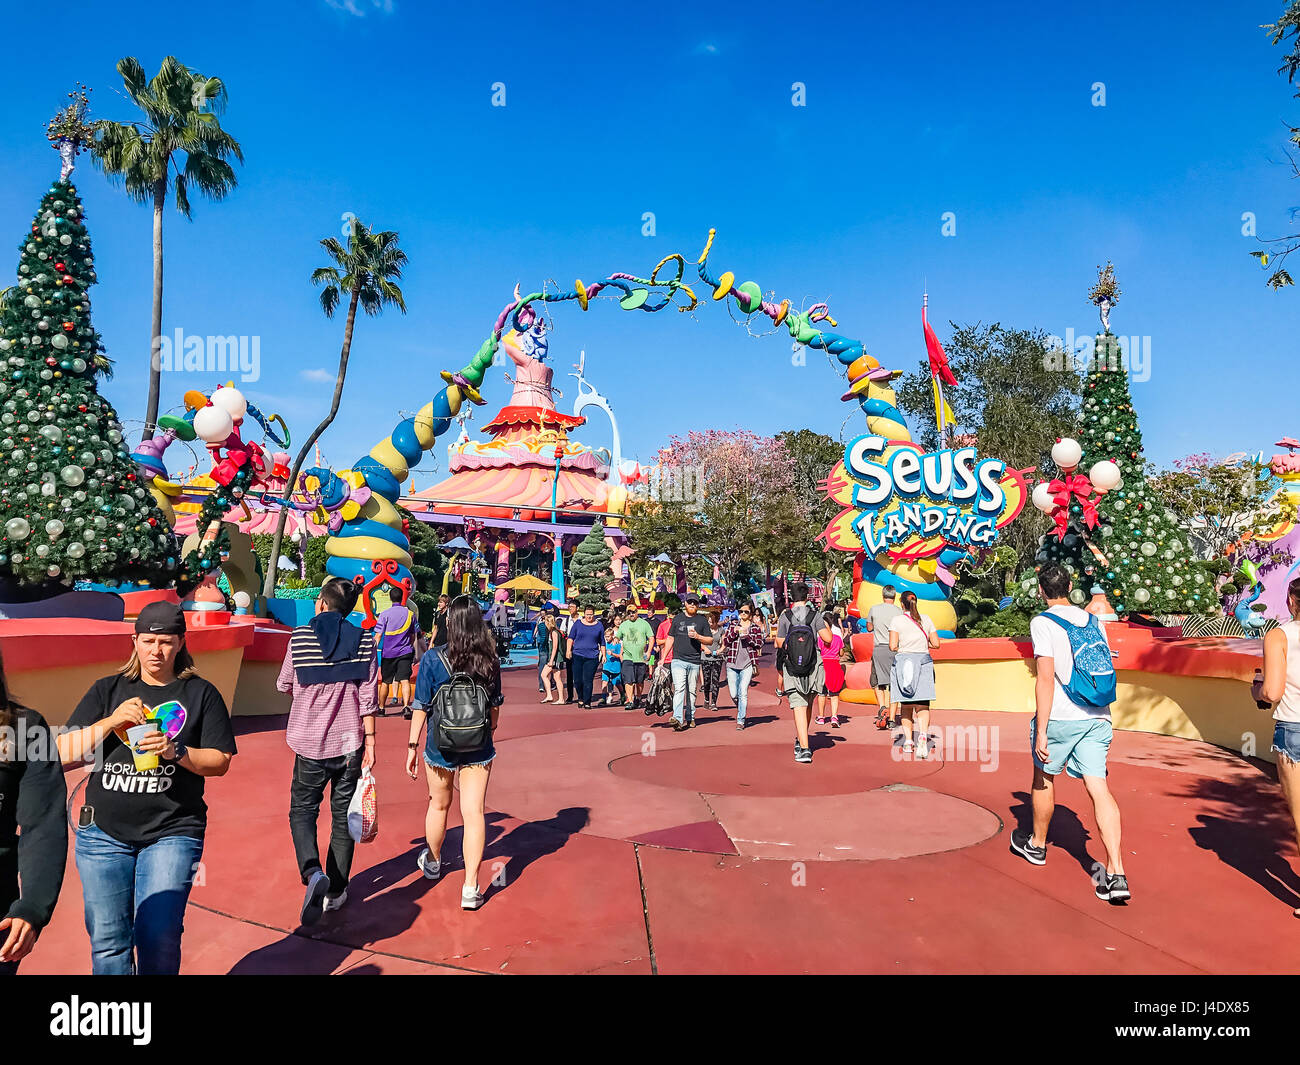 L'isola dell' avventura della Universal Studios Orlando. Universal Studios Orlando è un parco a tema resort di Orlando, Florida. Foto Stock